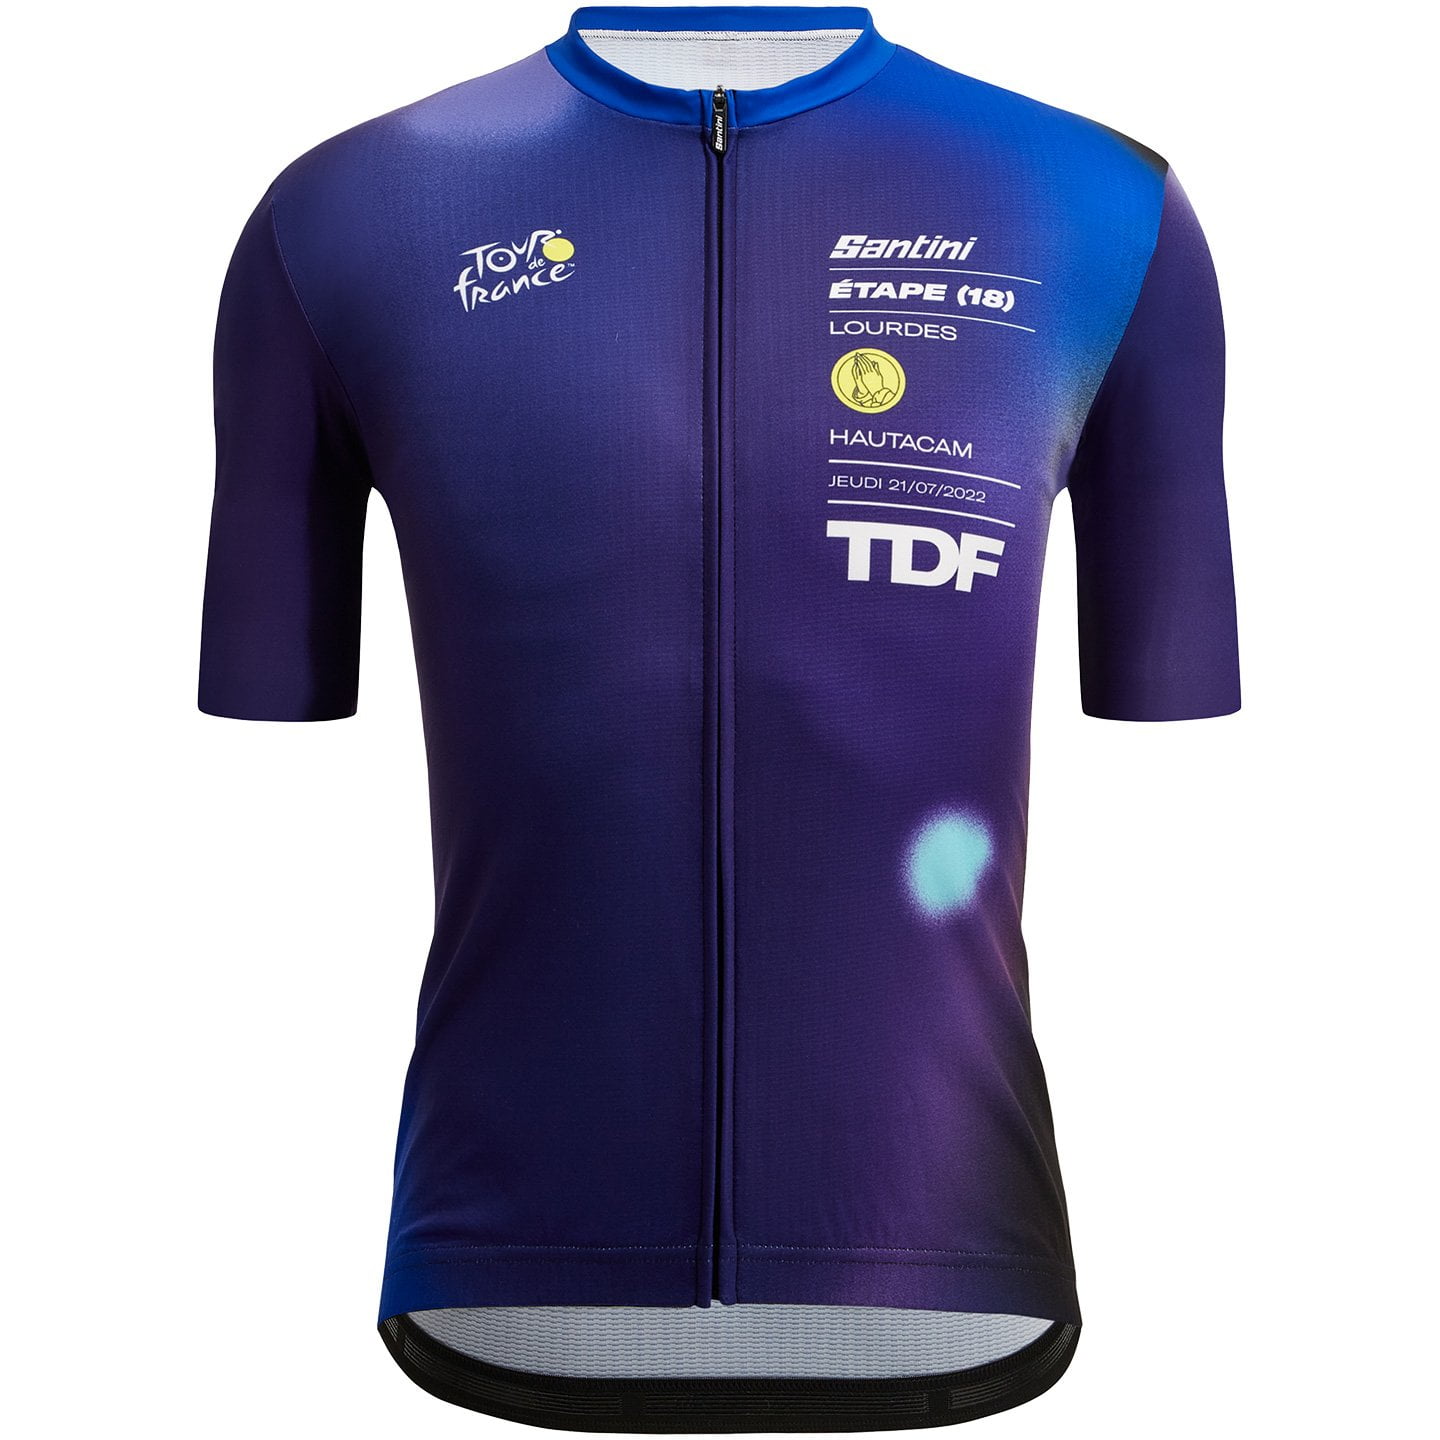 TOUR DE FRANCE Lourdes-Hautacam 2022 Short Sleeve Jersey, for men, size L, Cycling shirt, Cycle clothing